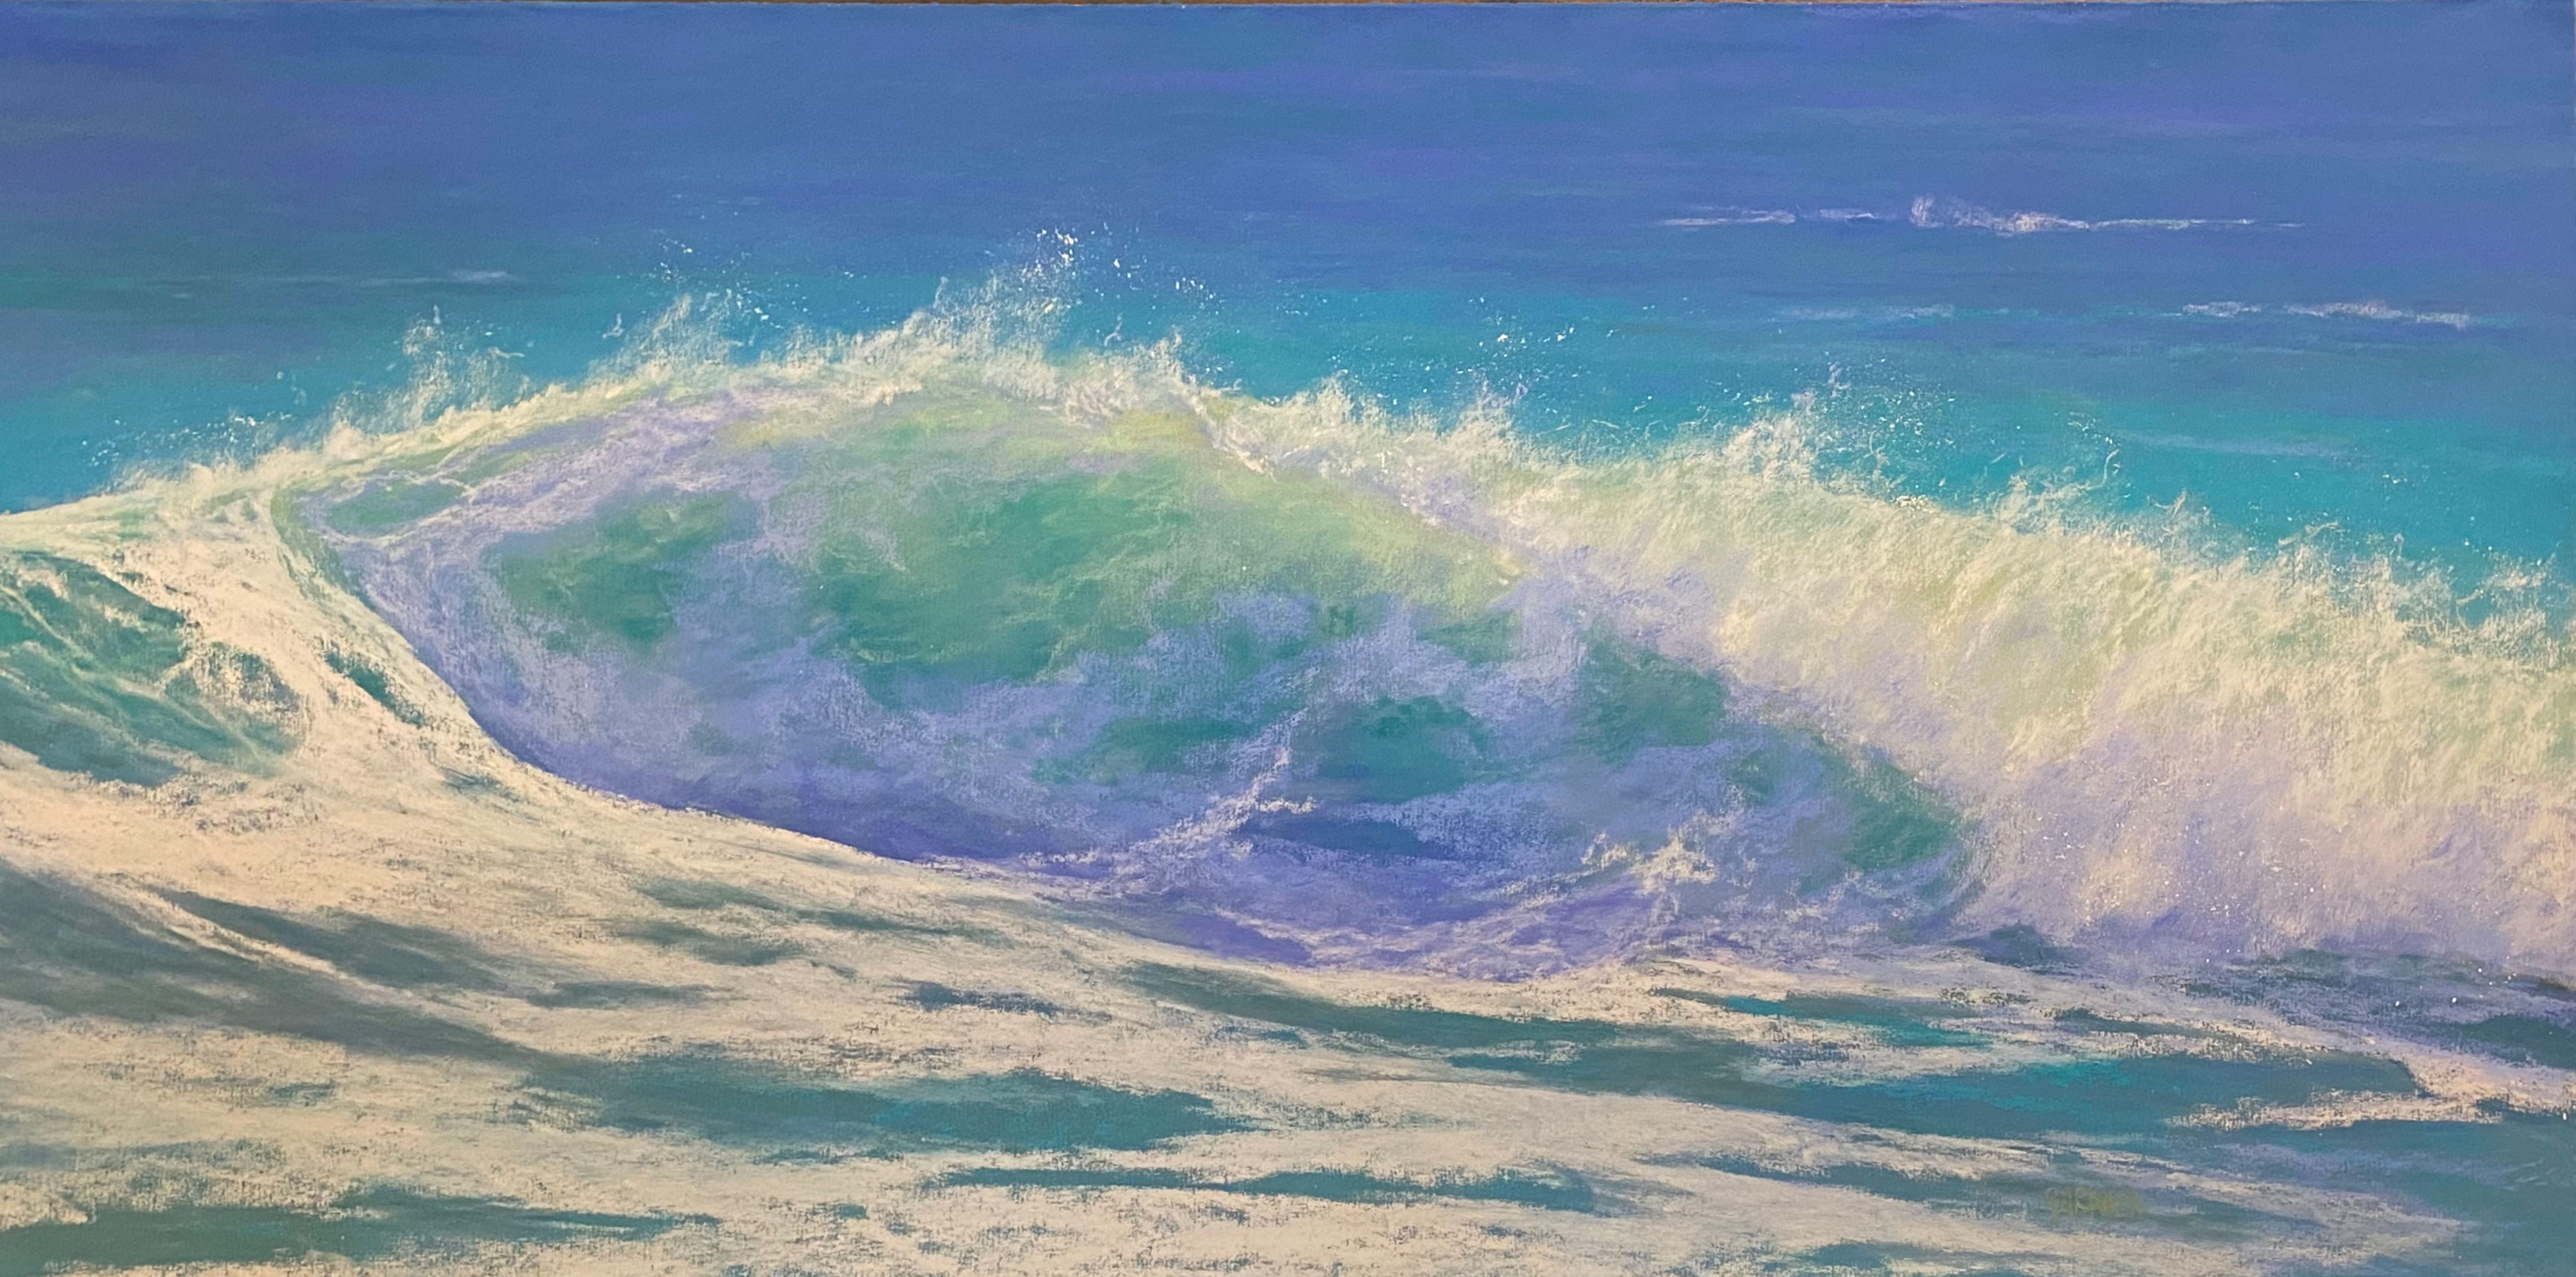 Warm Wasser, gerahmtes Original-Impressionistisches Pastellgemälde mit Meereslandschaft auf Papier – Art von Dina Gardner